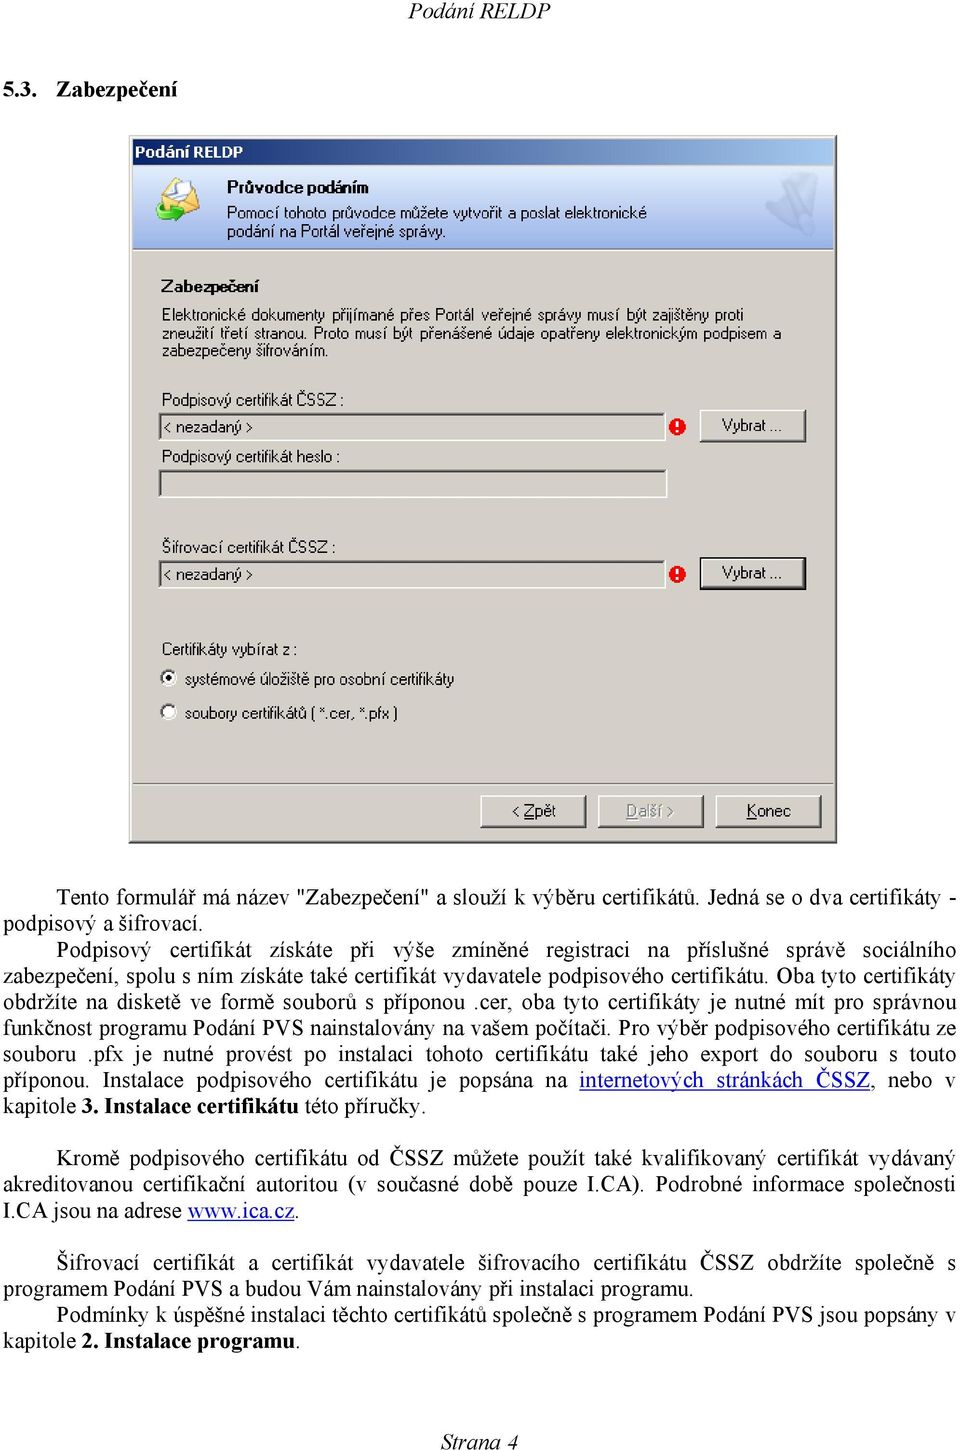 Oba tyto certifikáty obdržíte na disketě ve formě souborů s příponou.cer, oba tyto certifikáty je nutné mít pro správnou funkčnost programu Podání PVS nainstalovány na vašem počítači.